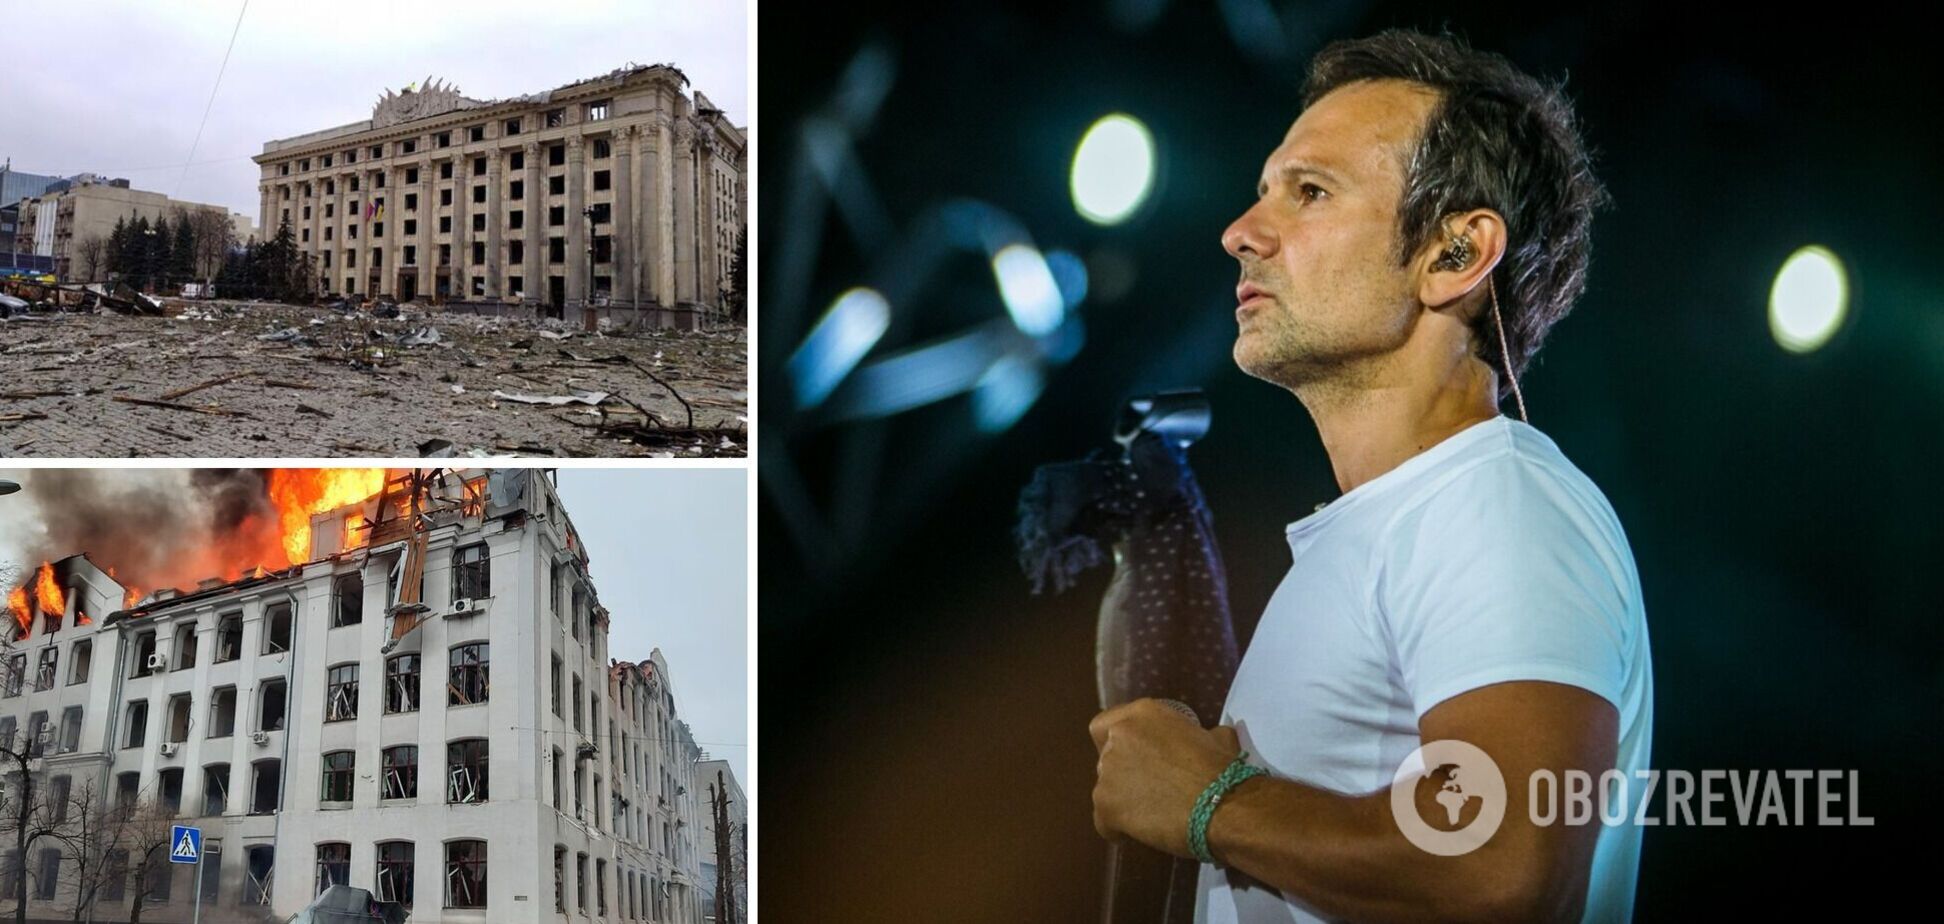 Вакарчук заспівав біля пам'ятника Шевченку в зруйнованому від бомбардувань Харкові. Відео